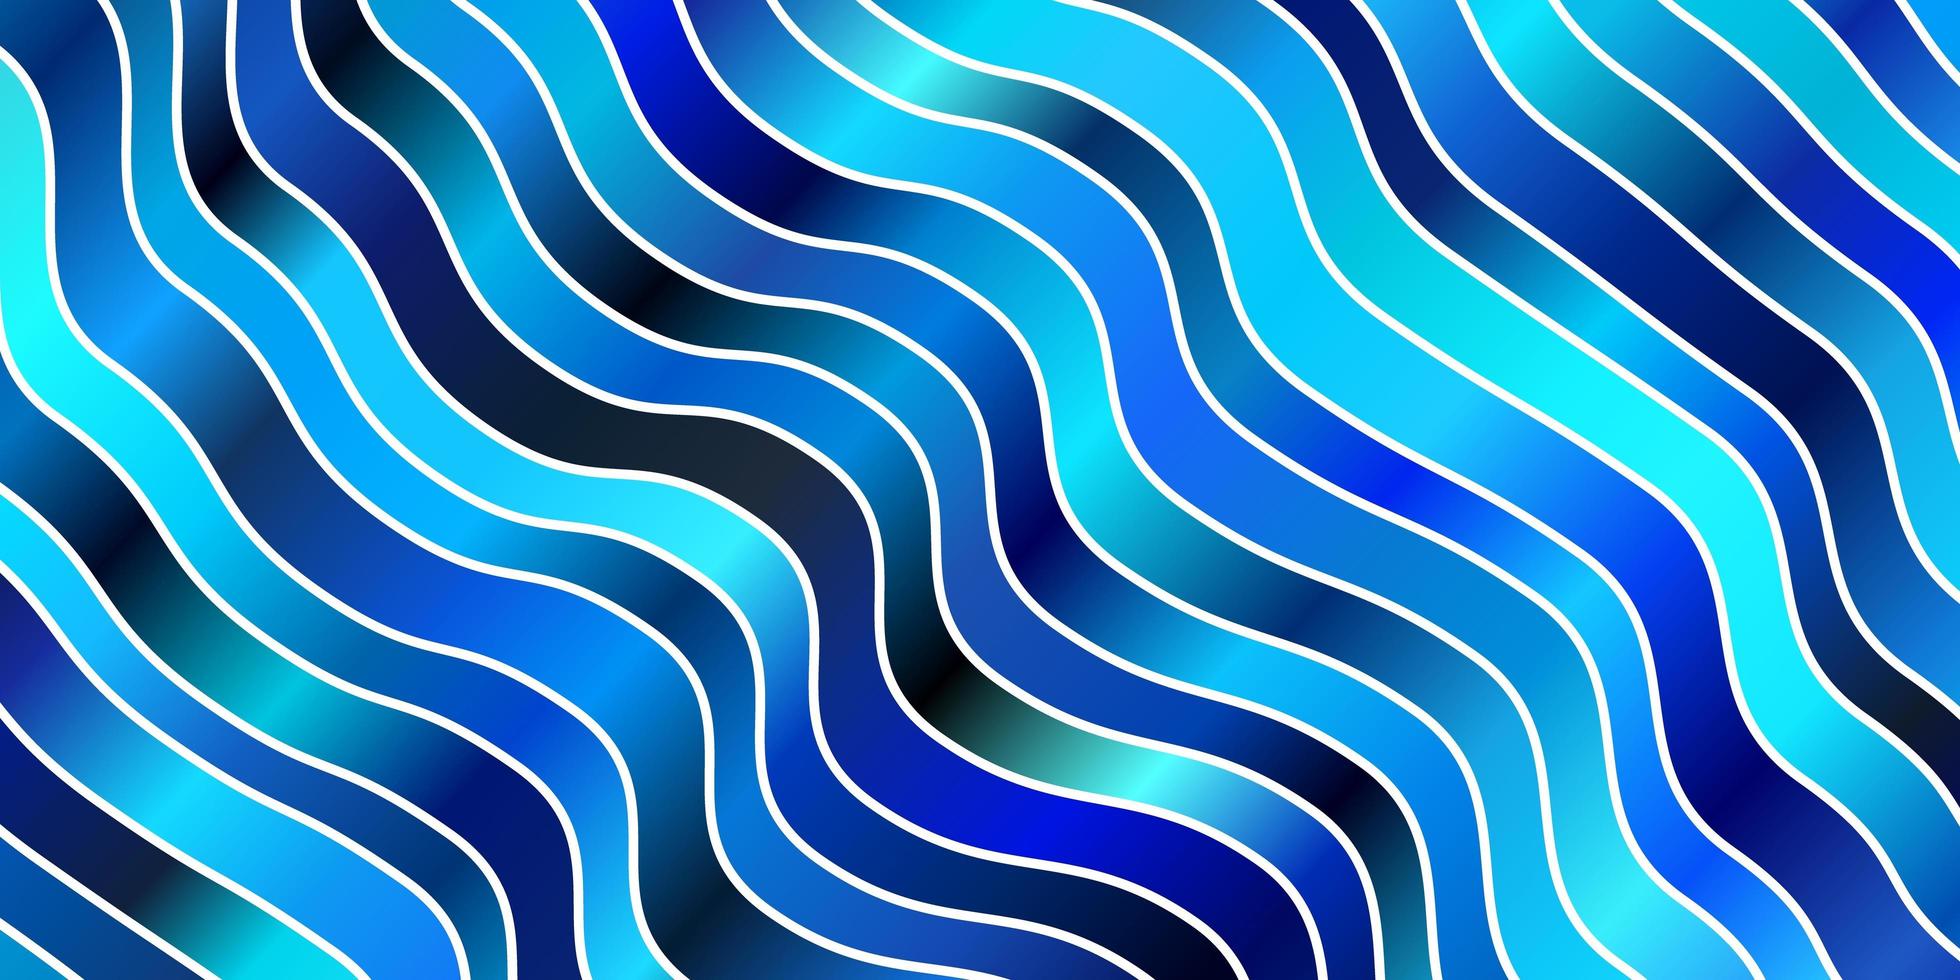 fundo vector azul claro com linhas.